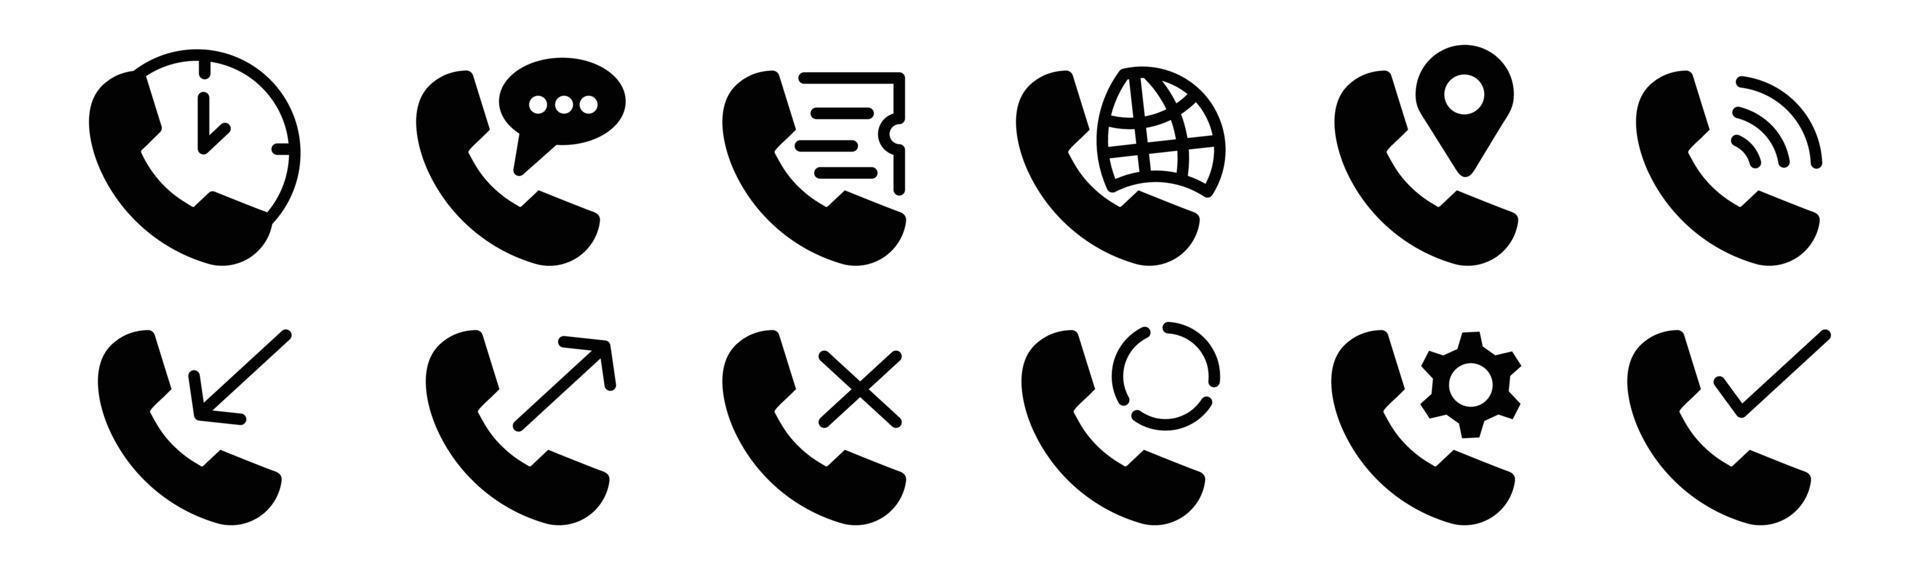 Anrufsymbol Kontaktieren Sie uns Logo der wichtigsten mobilen App. schwarzes lineares symbol symbol telefon mobil aus eingehend vektor